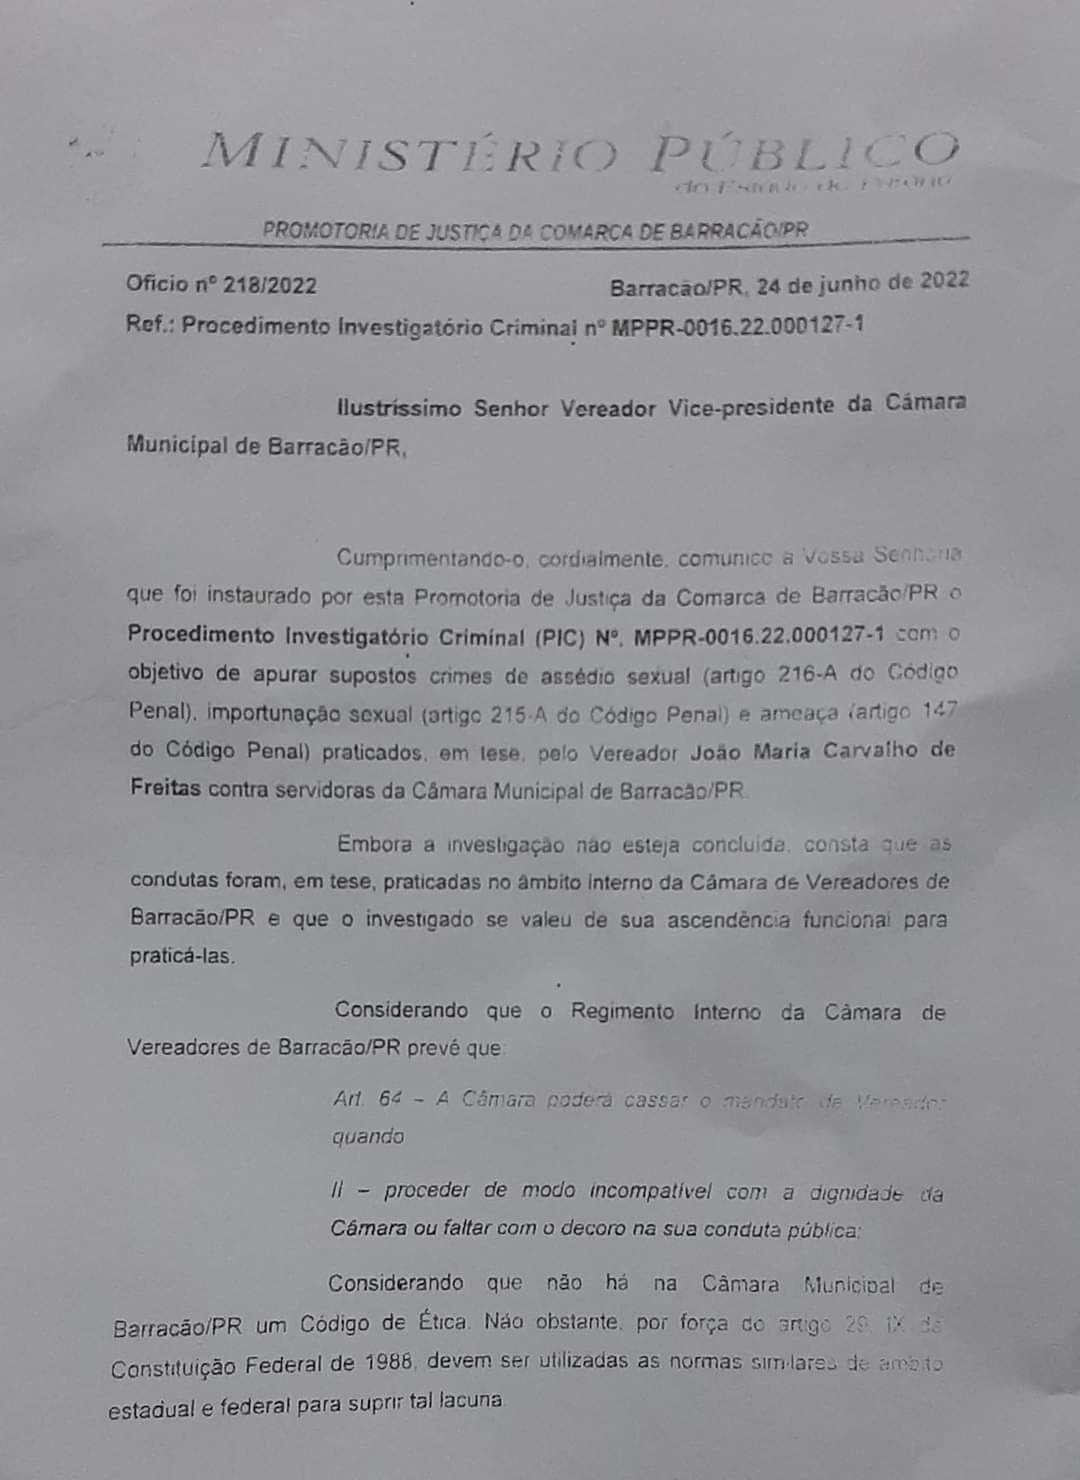 [Grupo RBJ de Comunicação] Presidente da Câmara de Vereadores renuncia ao mandato após denúncia de assédio na casa de leis, em Barracão